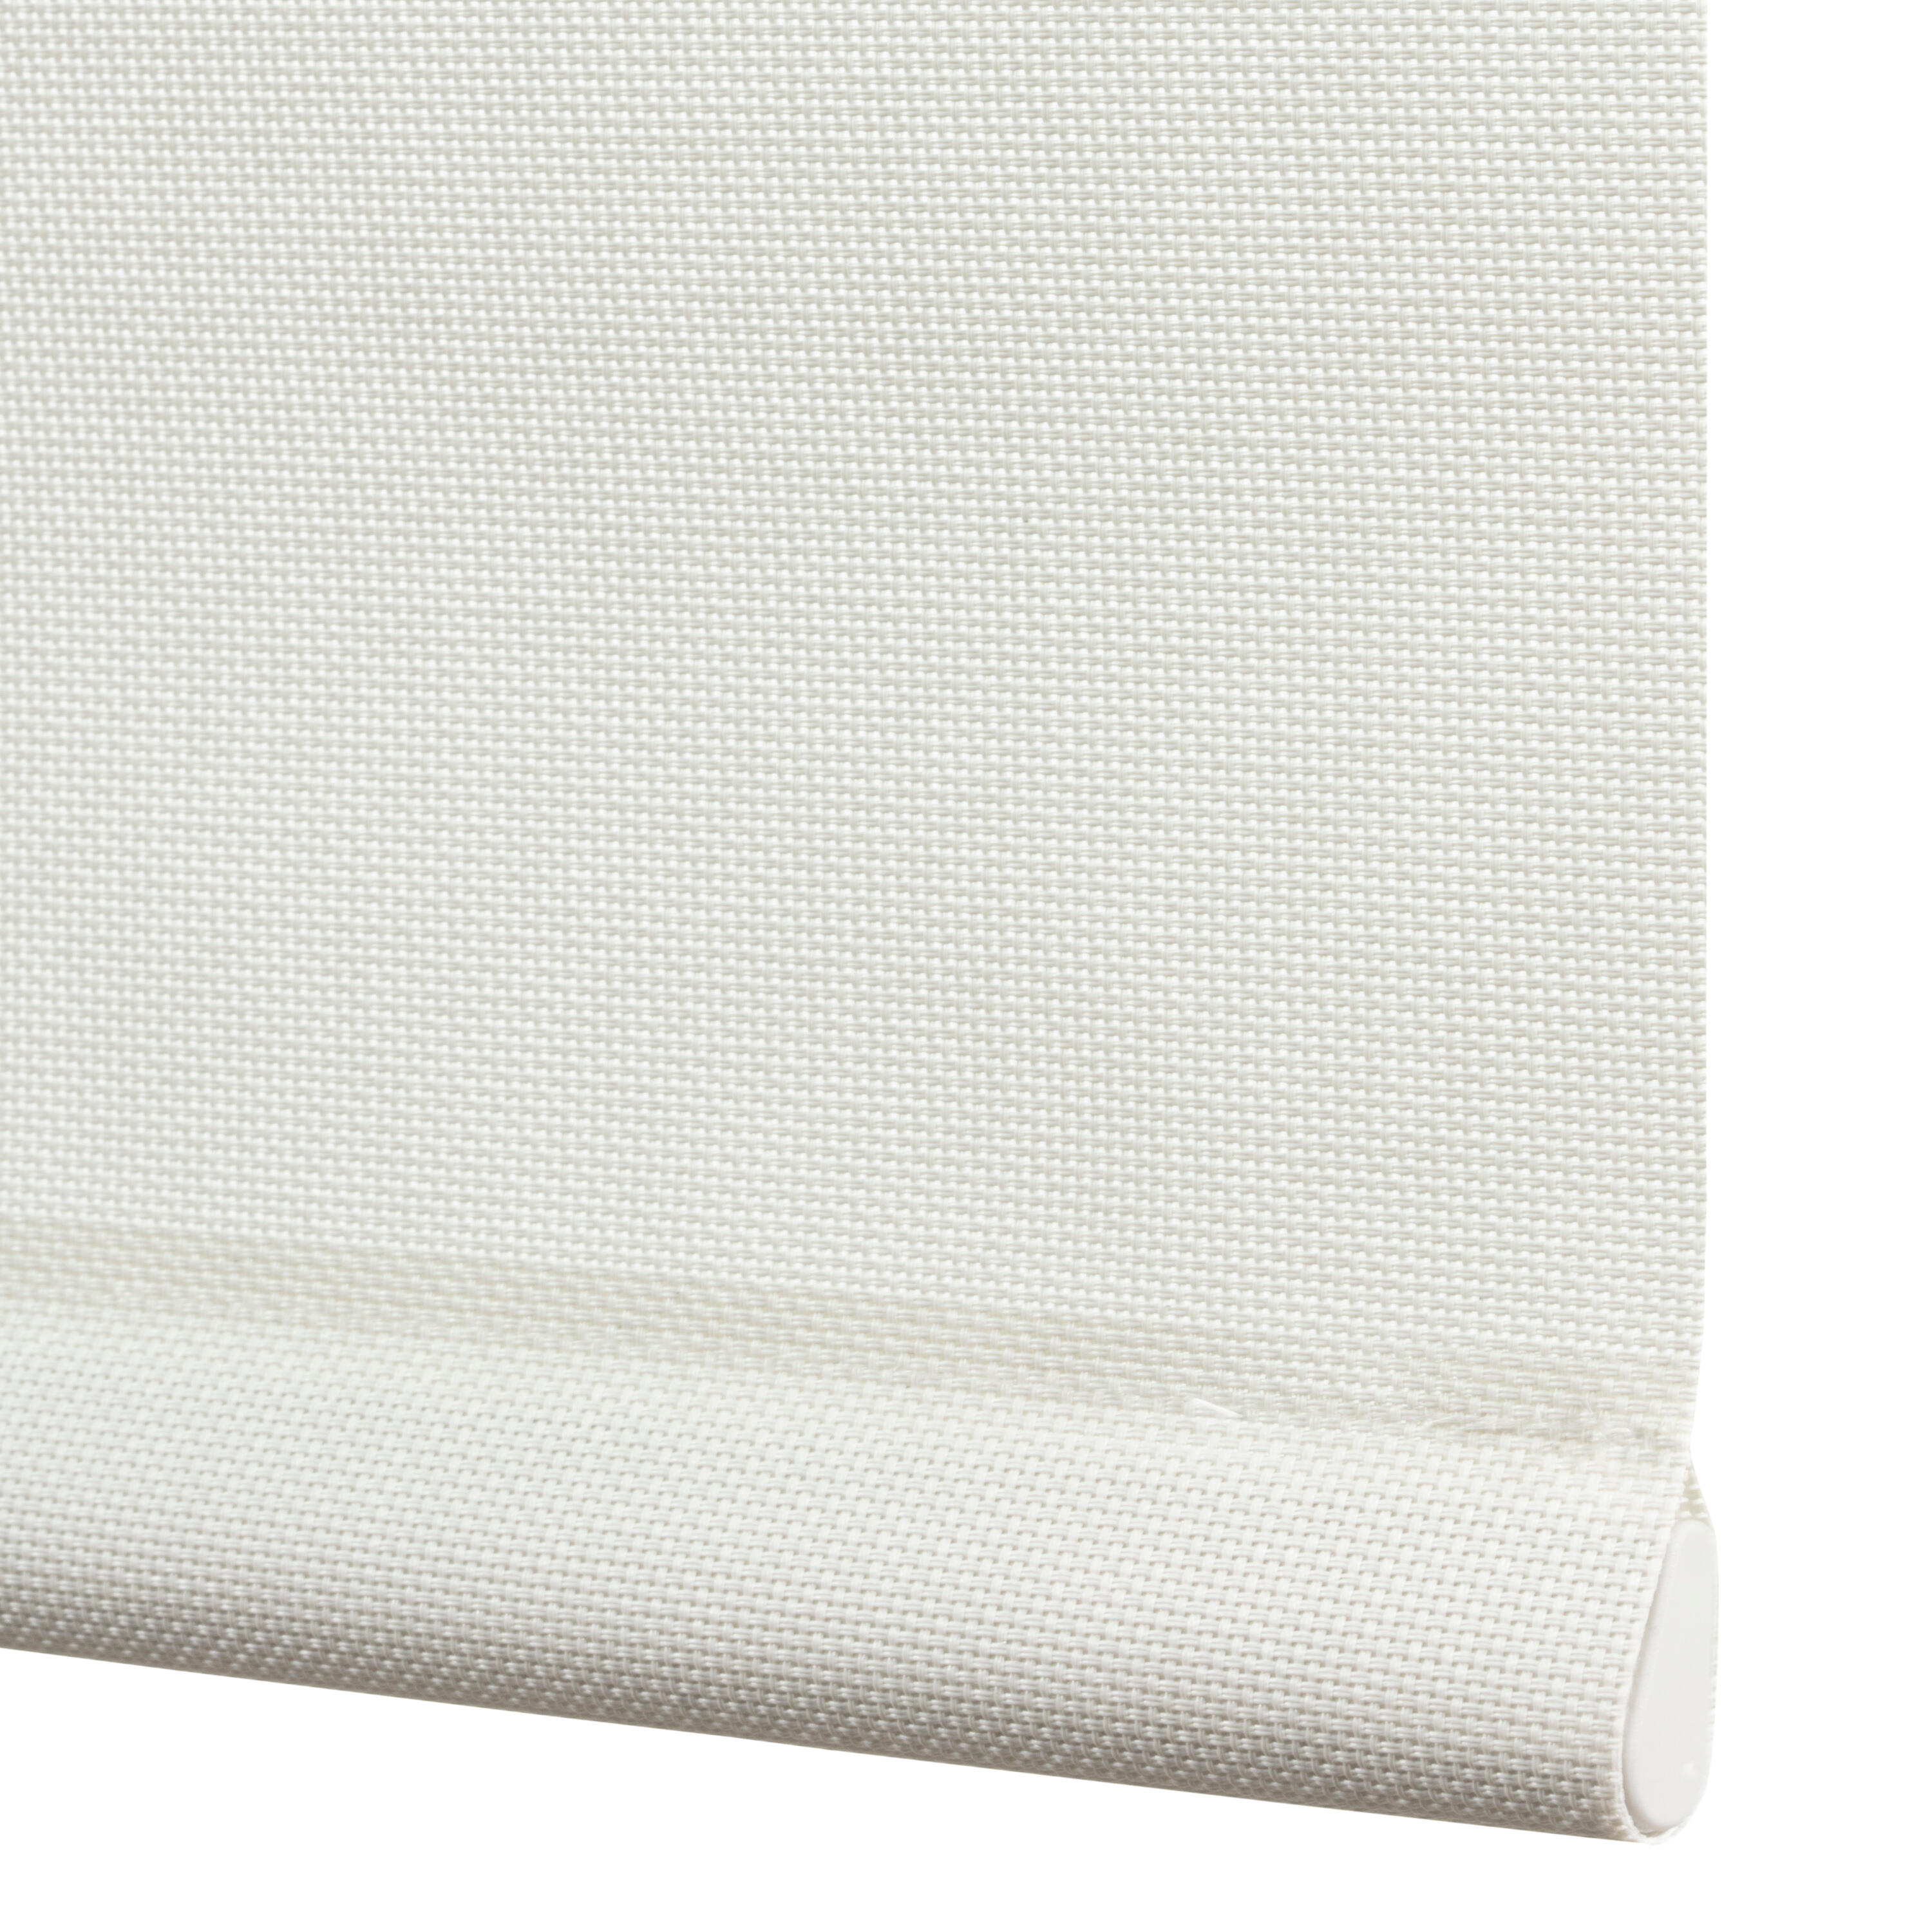 Tenda a rullo filtrante INSPIRE Brasilia bianco 105 x 250 cm - 8